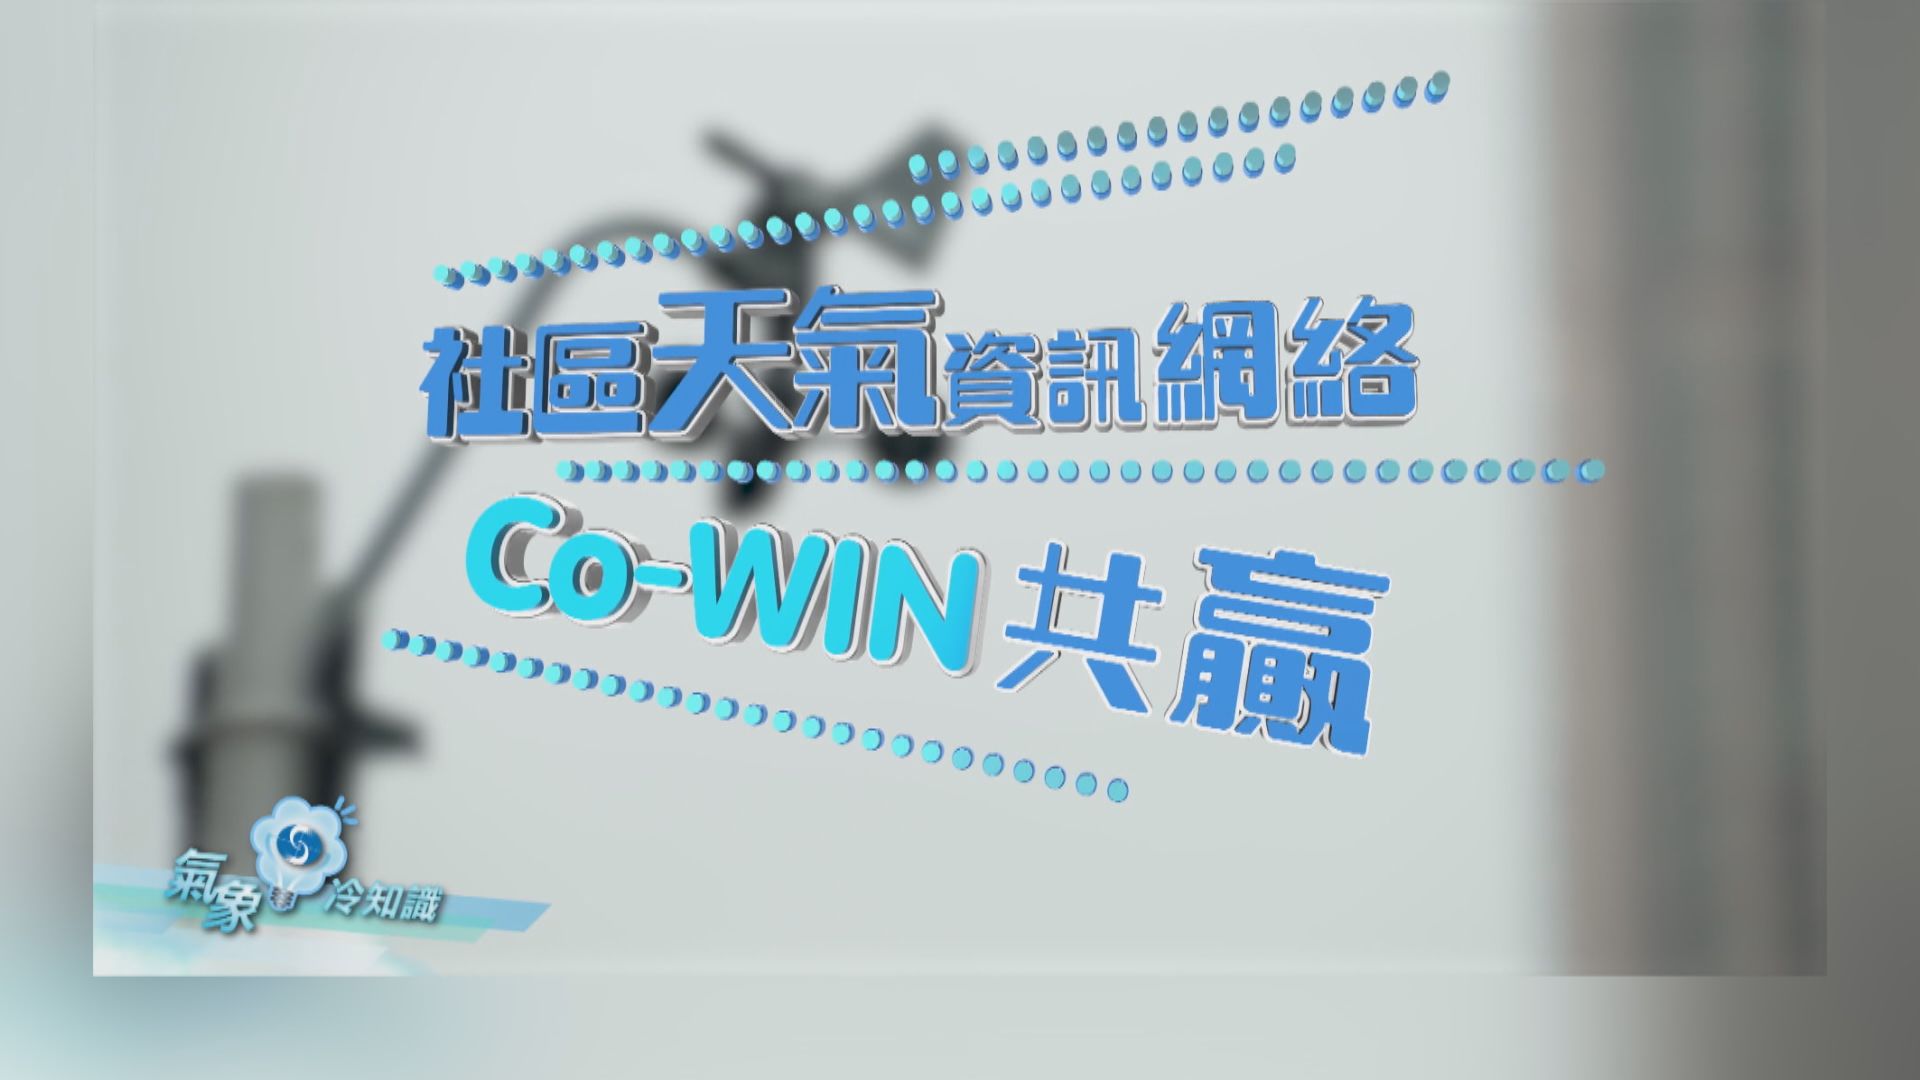 【氣象冷知識】「社區天氣資訊網絡」— Co-WIN共贏